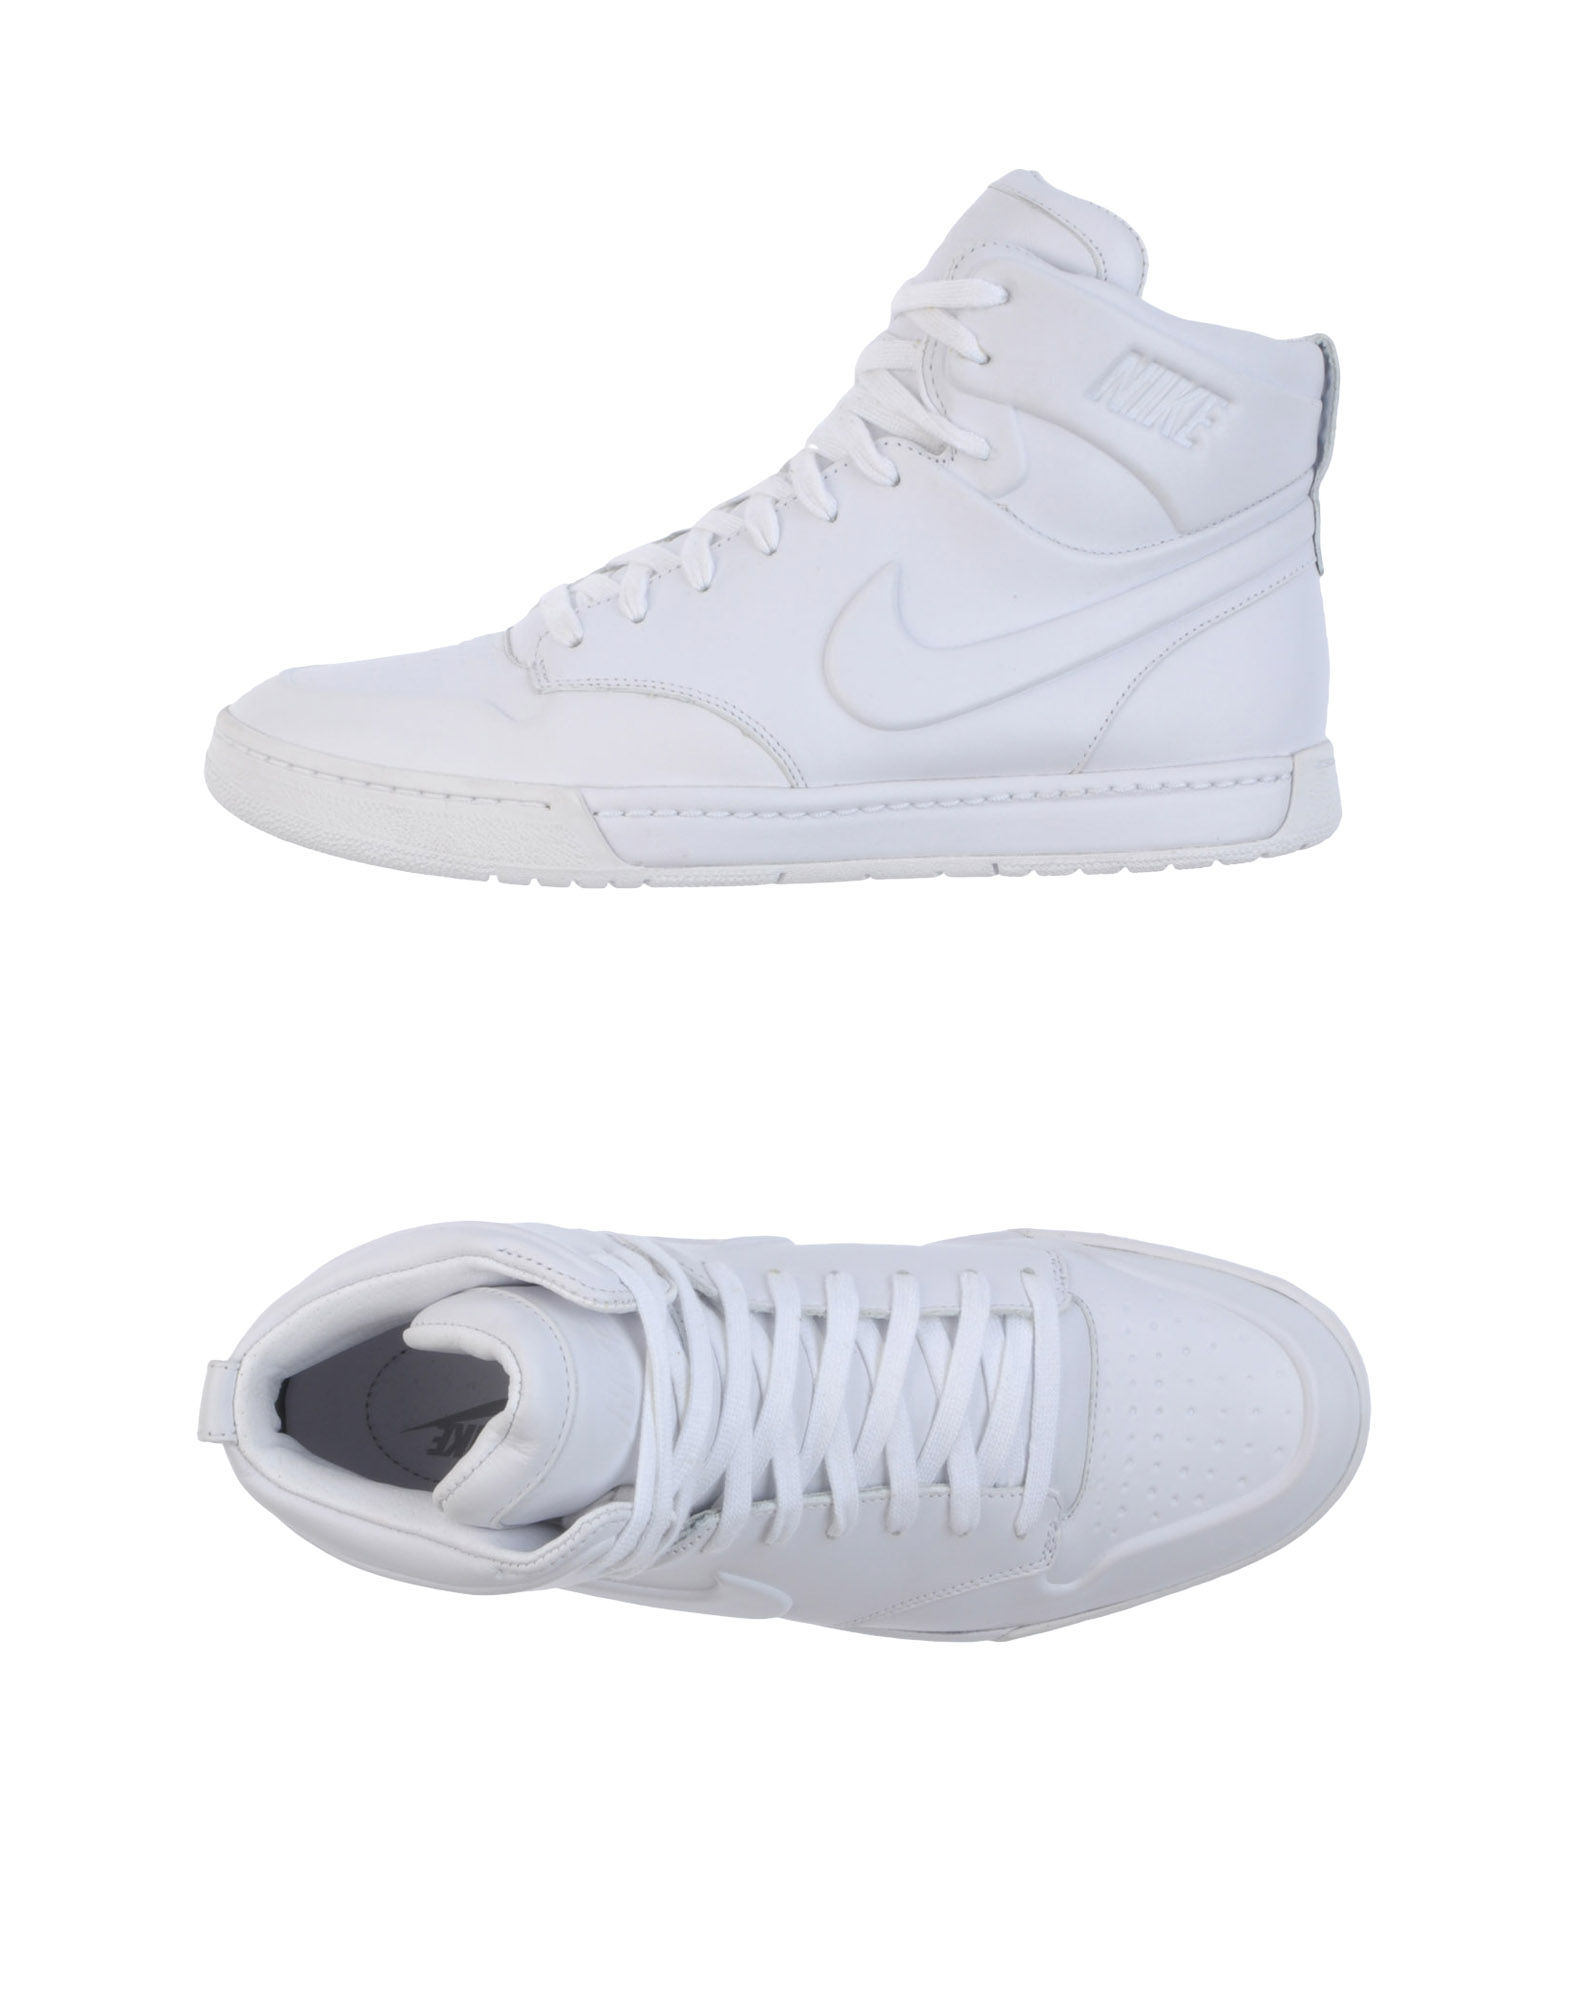 nike high top sneakers white